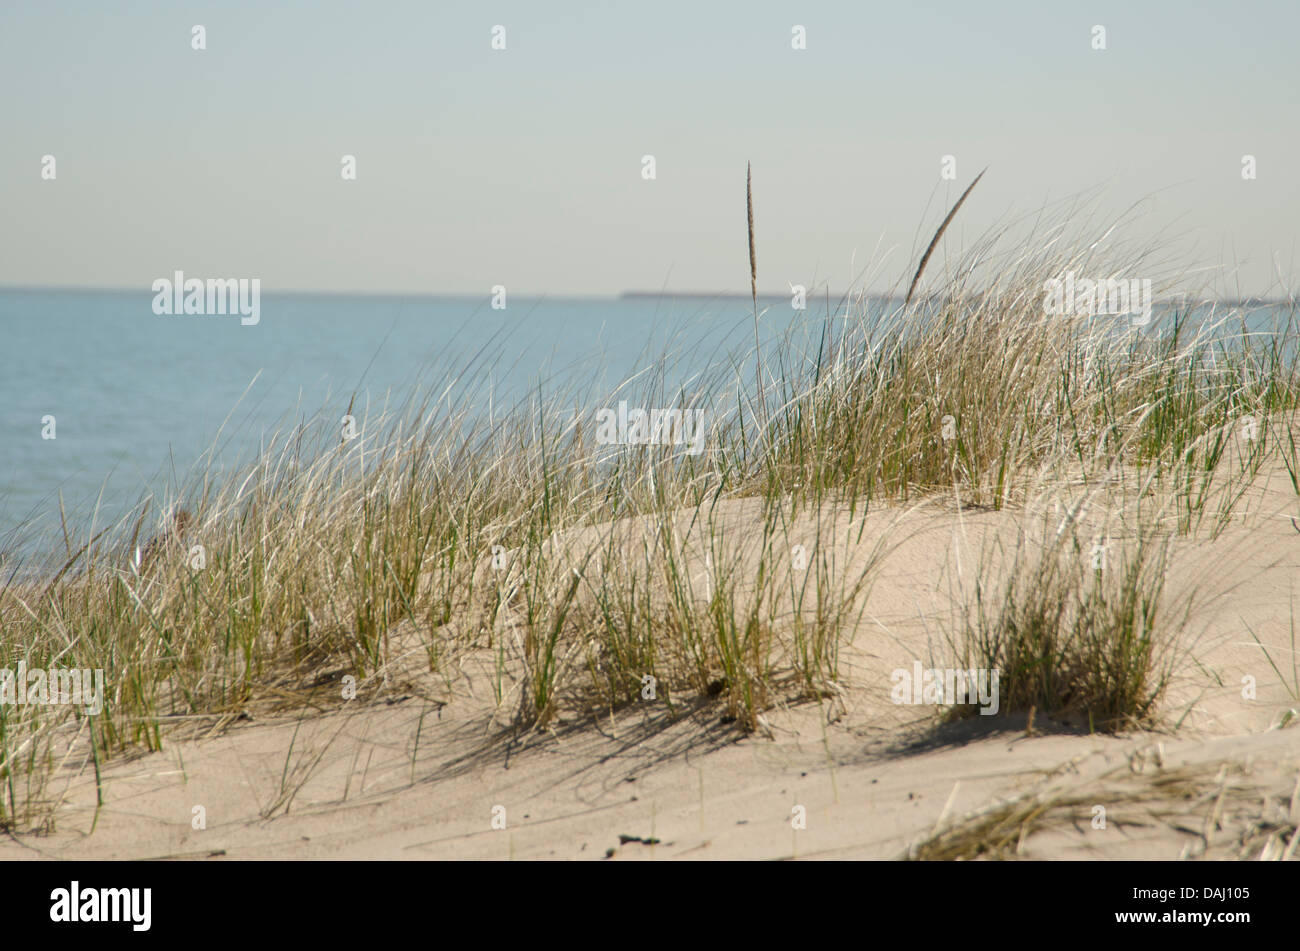 Indiana Dunes National Lakeshore, Indiana, United States of America Stock Photo